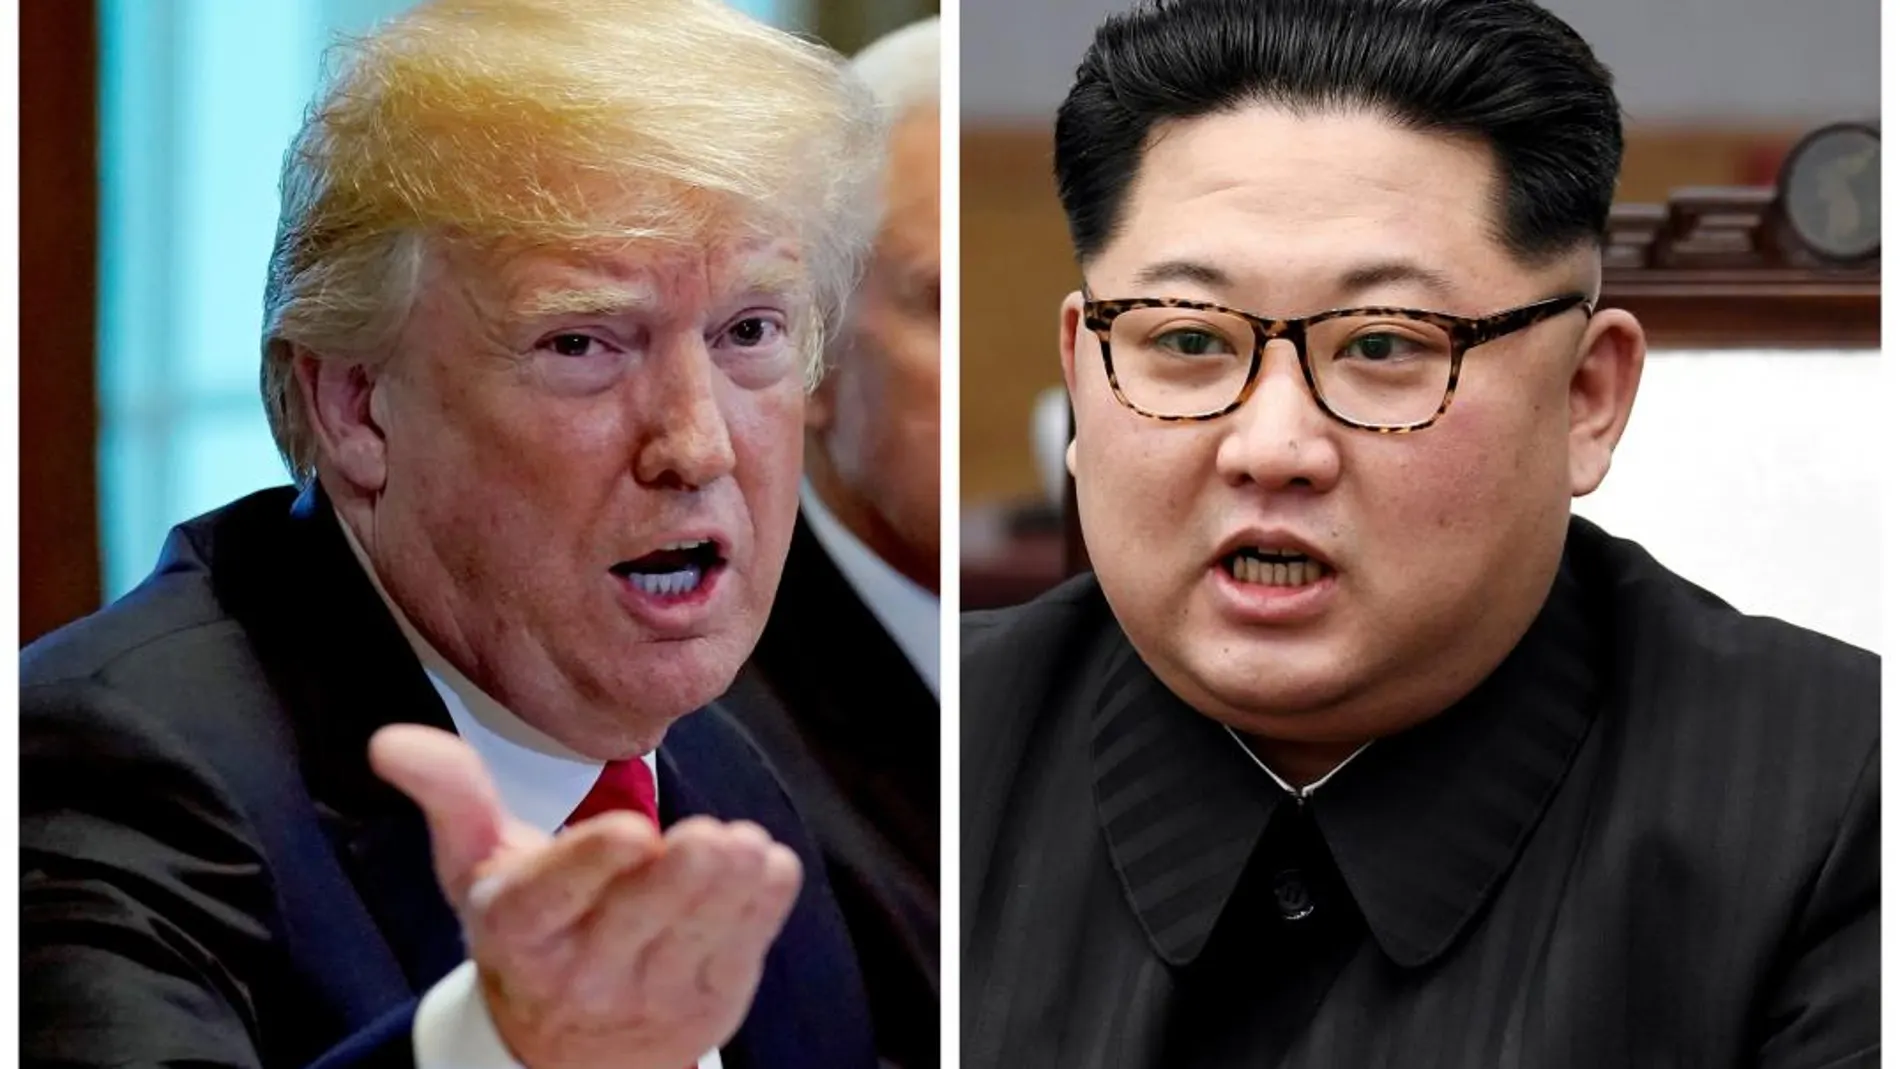 El presidente estadounidense, Donald Trump, y el líder norcoreano, Kim Jong Un / Foto: Reuters